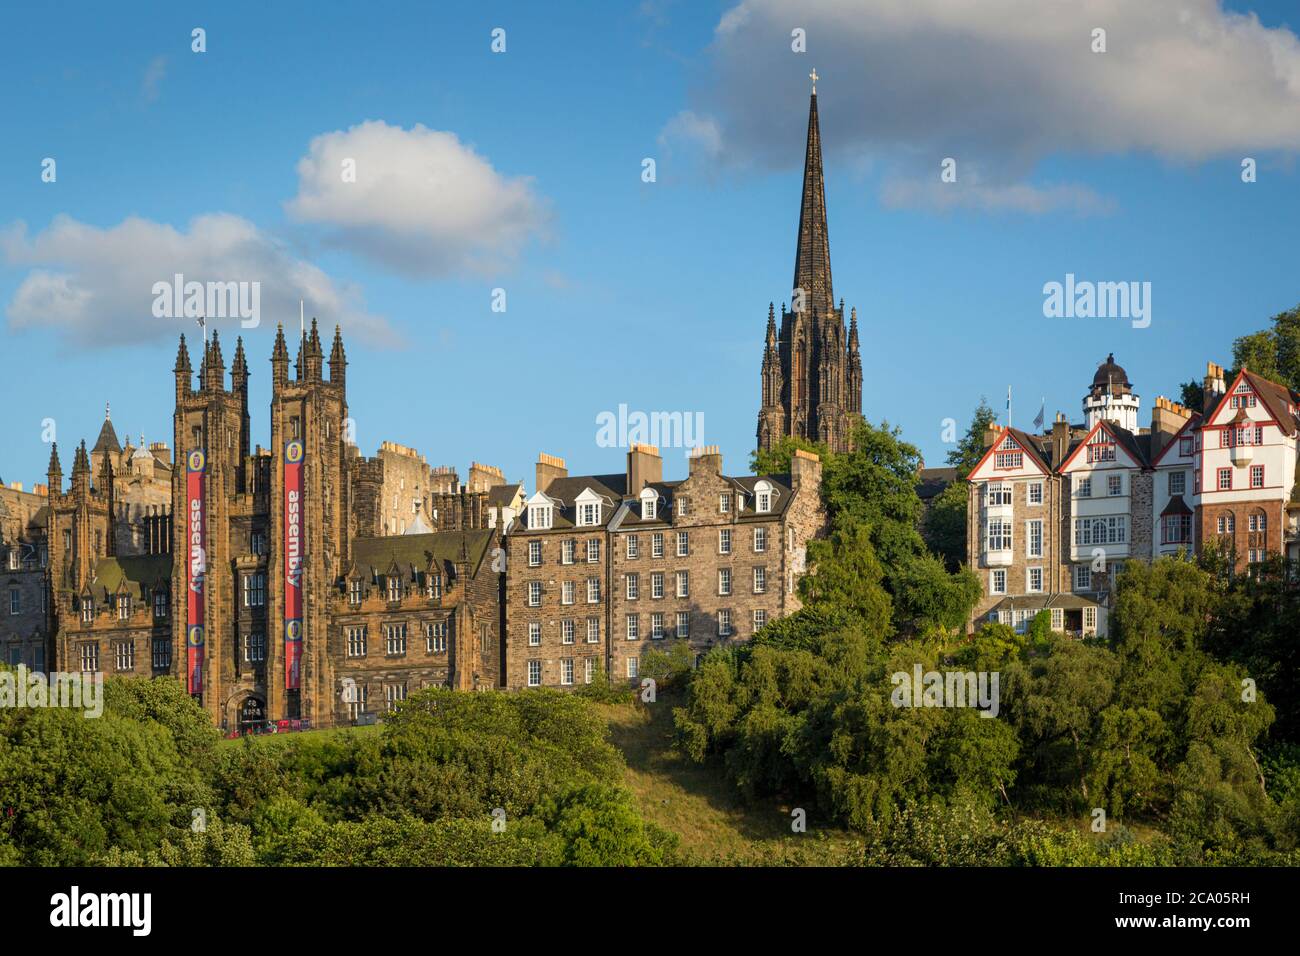 Church of Scotland und Tollbooth Church Towers ragen über den Gebäuden des alten Edinburgh, Schottland, Großbritannien Stockfoto